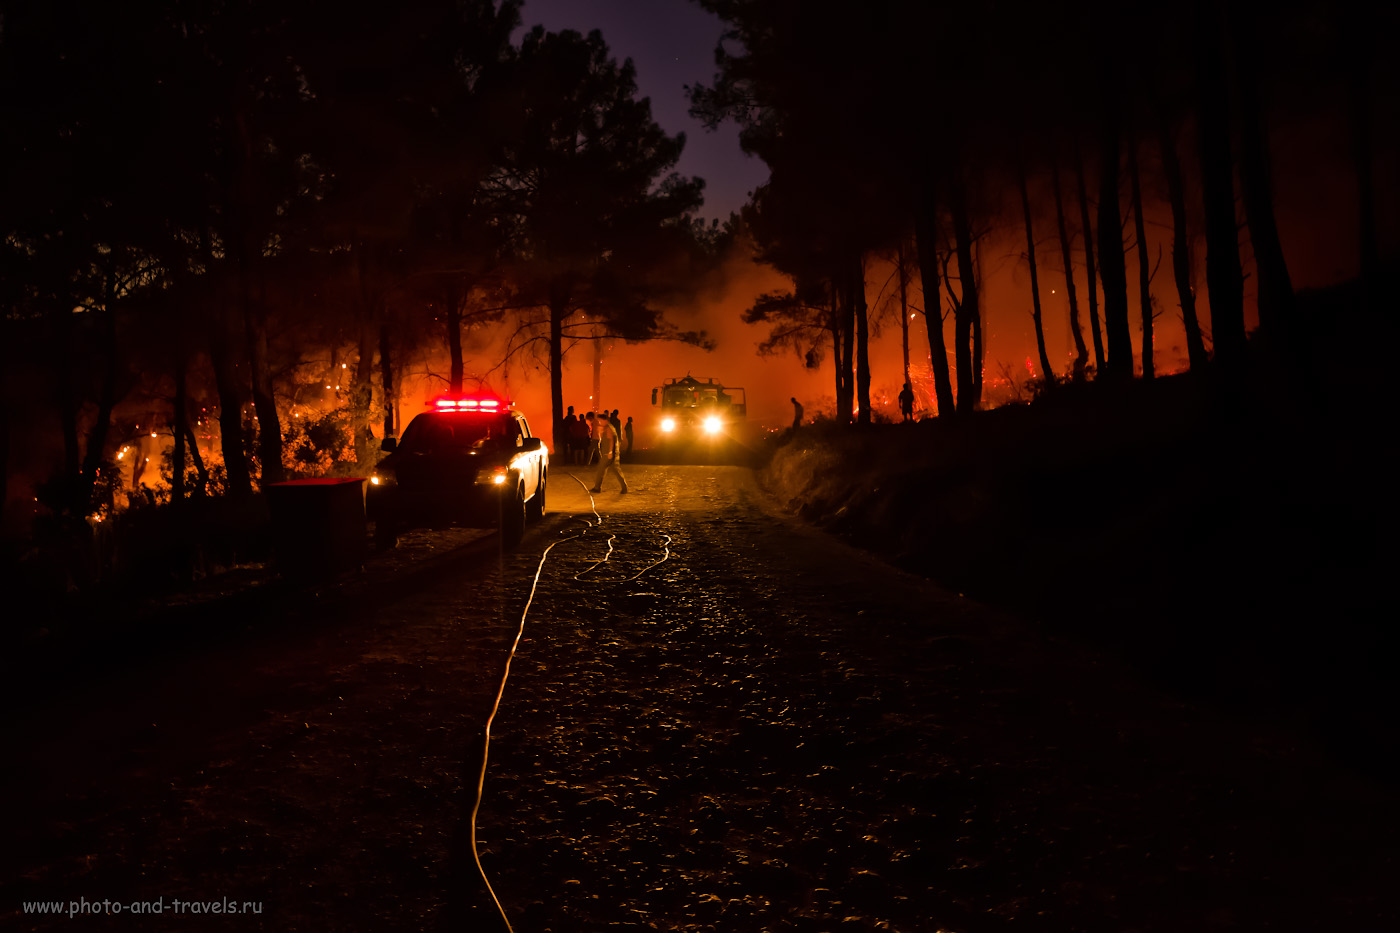 Фото 26. Пожар в лесу по пути от маяка Гелидония в поселок Караёз. Опасно ли в Турции ходить по горам? В=0,1 сек., f/2.8, ISO 3200, -0.67, ФР=16 мм.